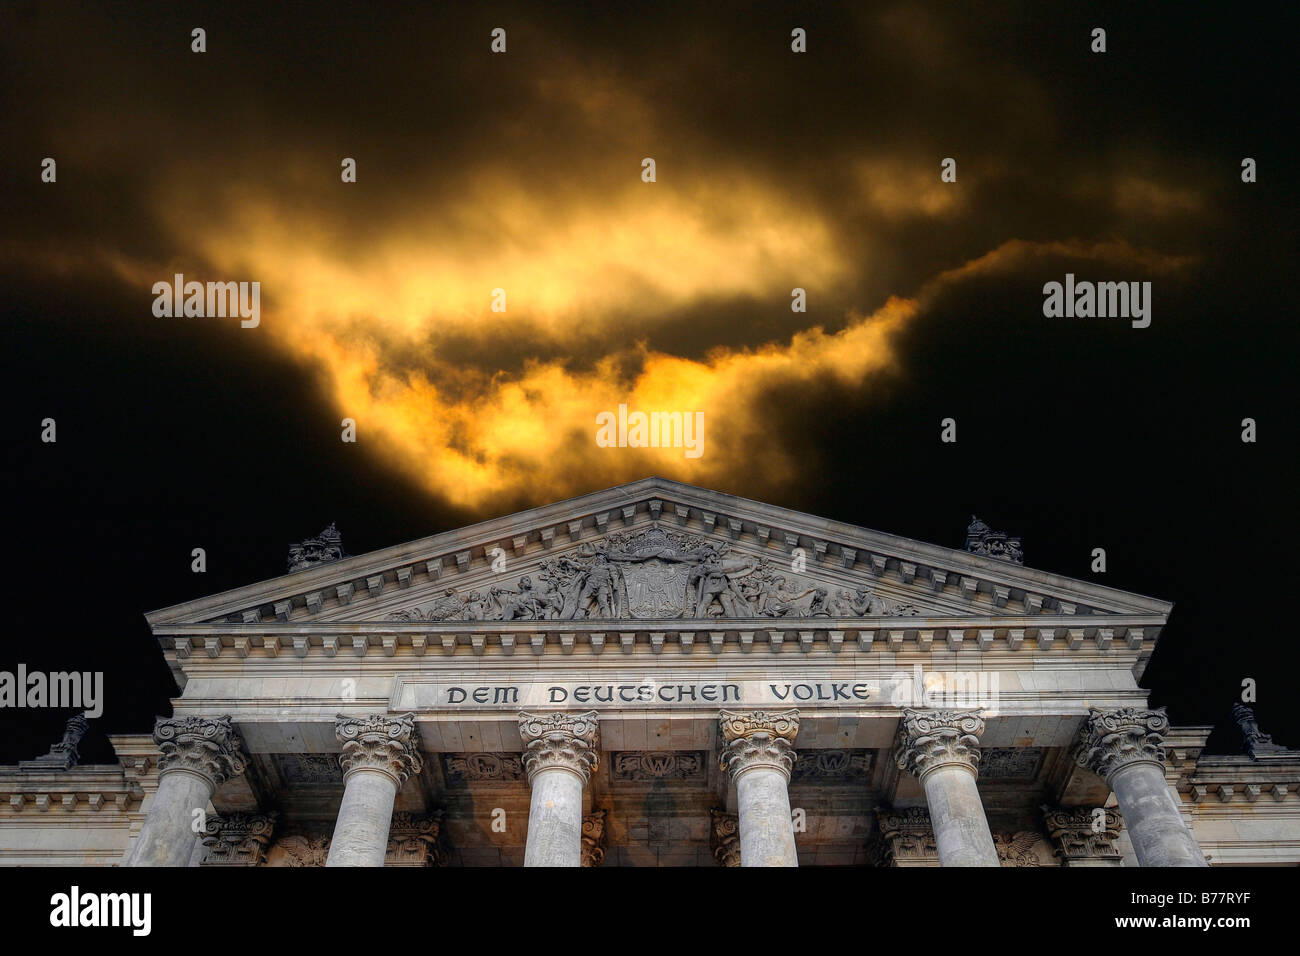 Nuvole minacciose sopra scritte 'Dem Deutschen Volke' o 'il popolo tedesco', sul Reichstag di Berlino, Germania, Foto Stock